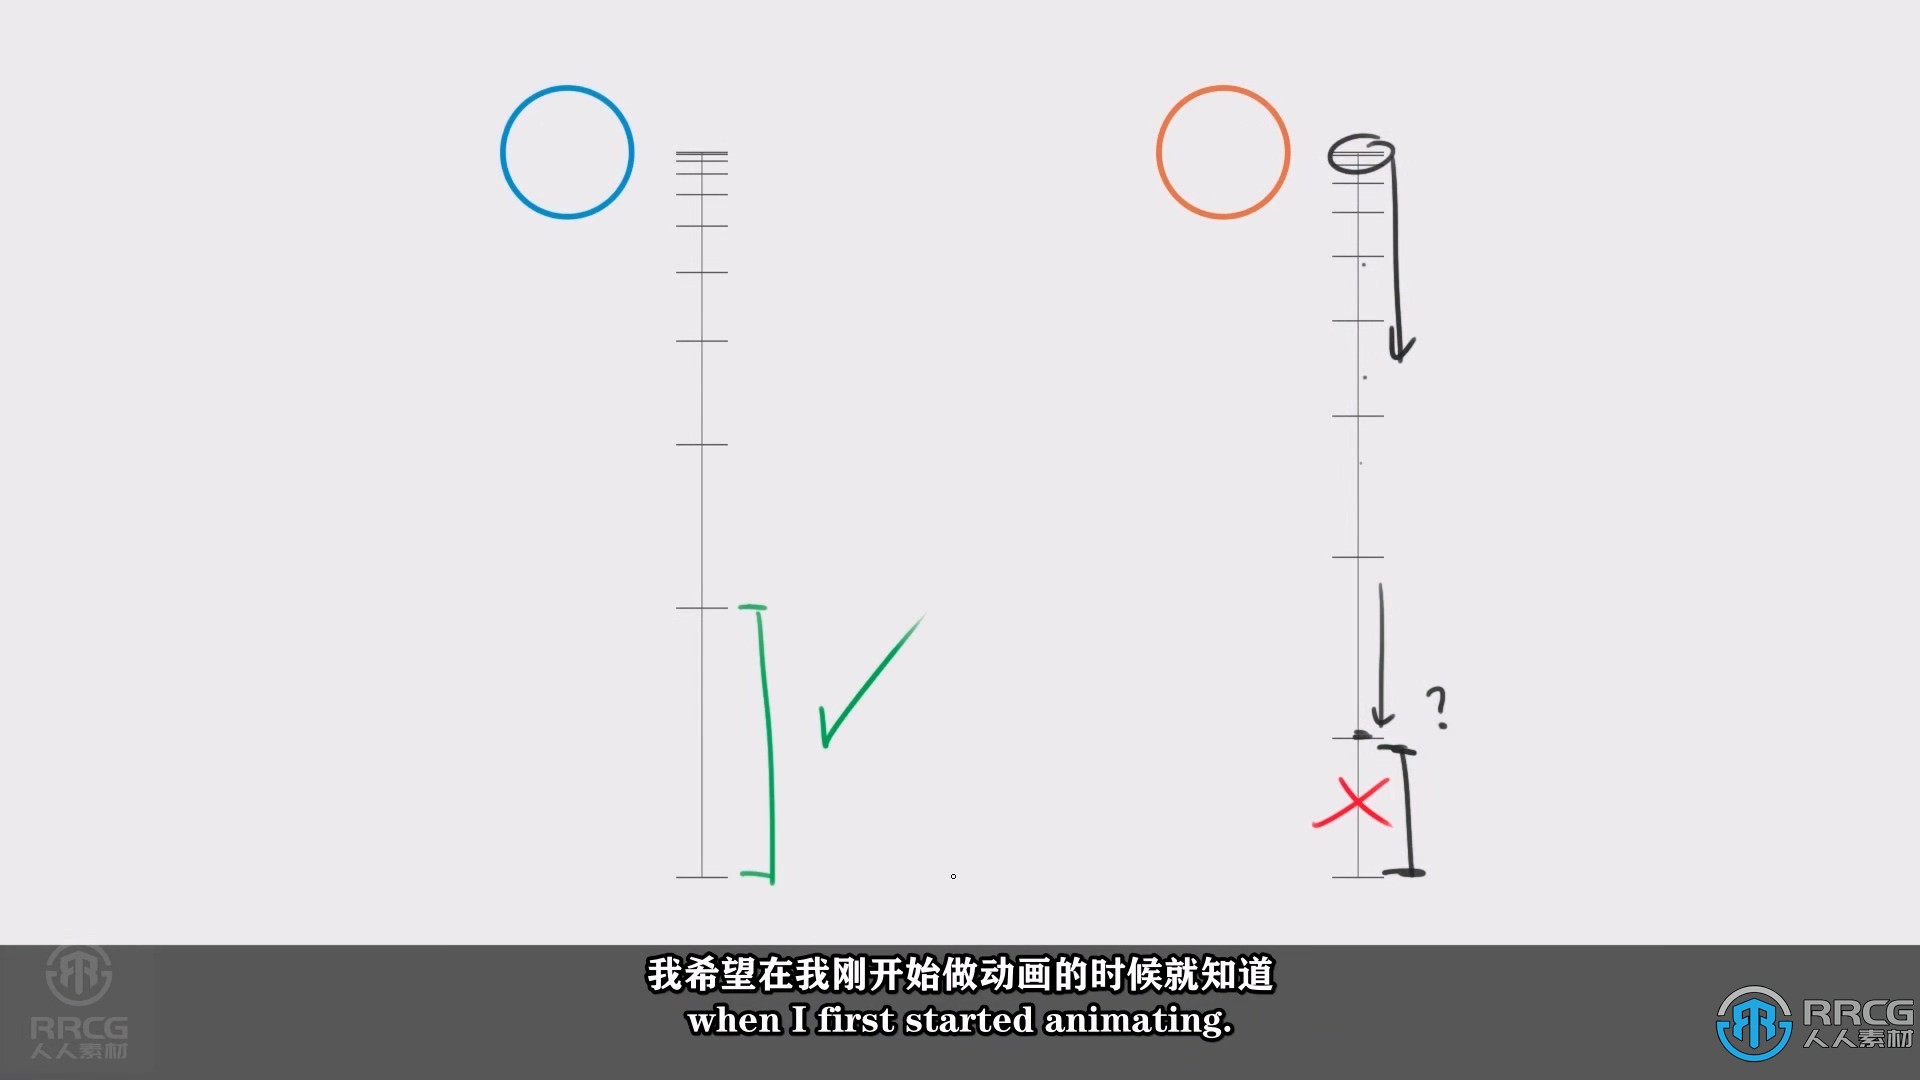 【中文字幕】Blender动画核心技能训练营视频教程